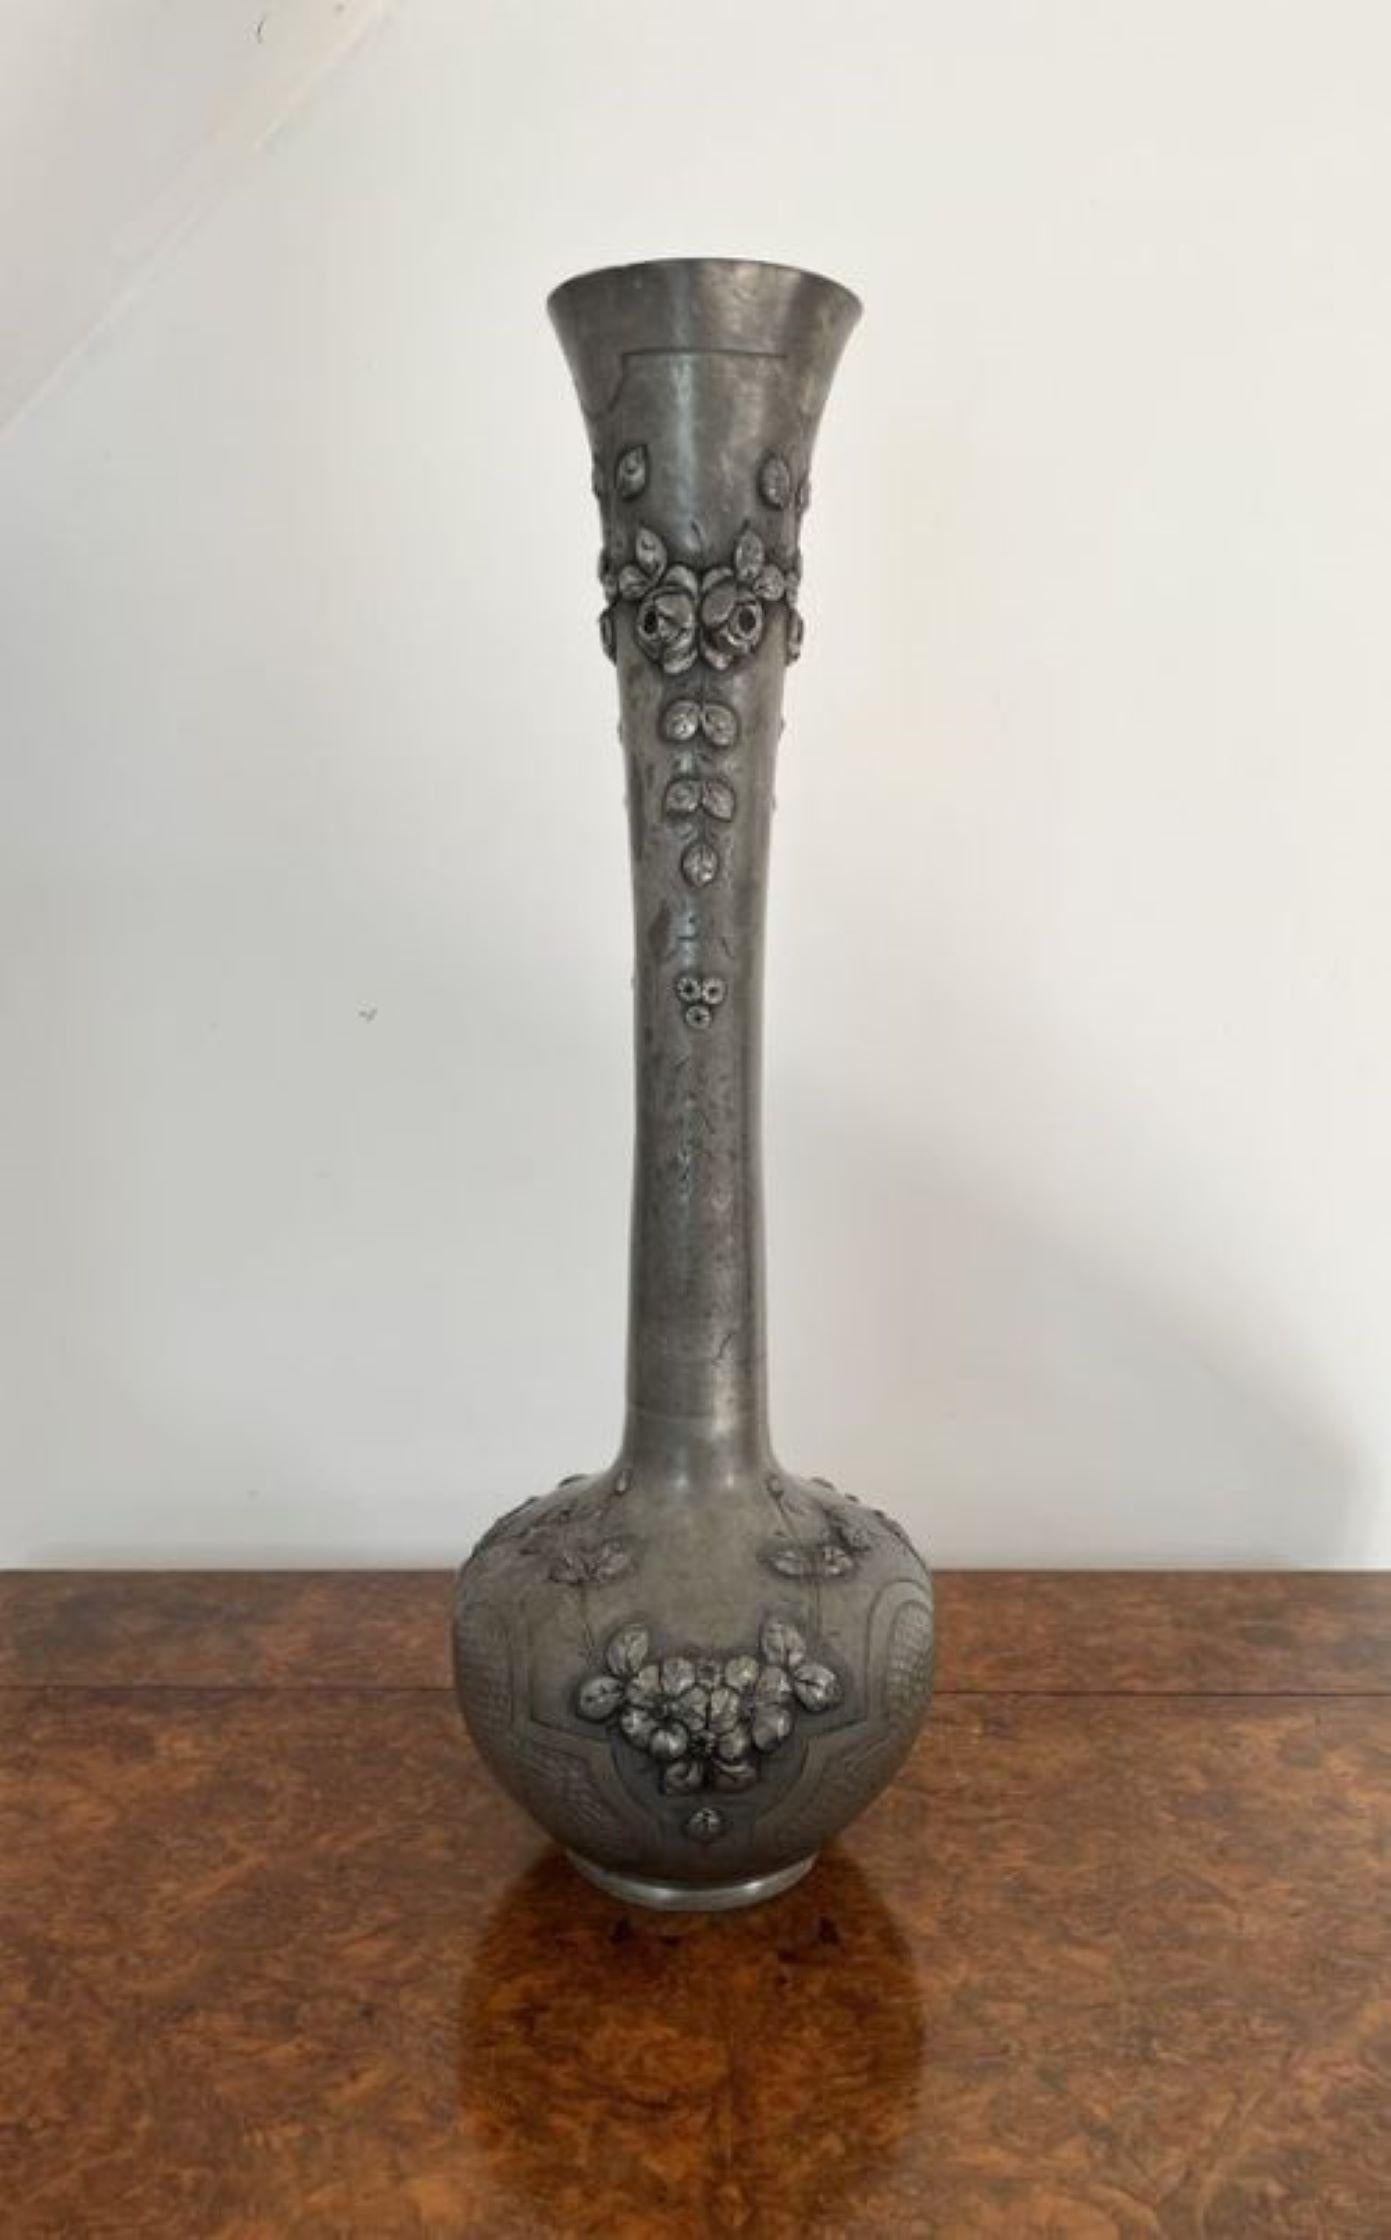 Große antike 19. Jahrhundert Französisch Qualität Zinn Vase mit einer Qualität 19. Jahrhundert Französisch große Zinn-Vase mit atemberaubenden geprägten Blumen Detail, mit einem bauchigen Körper und einem geriffelten Hals.